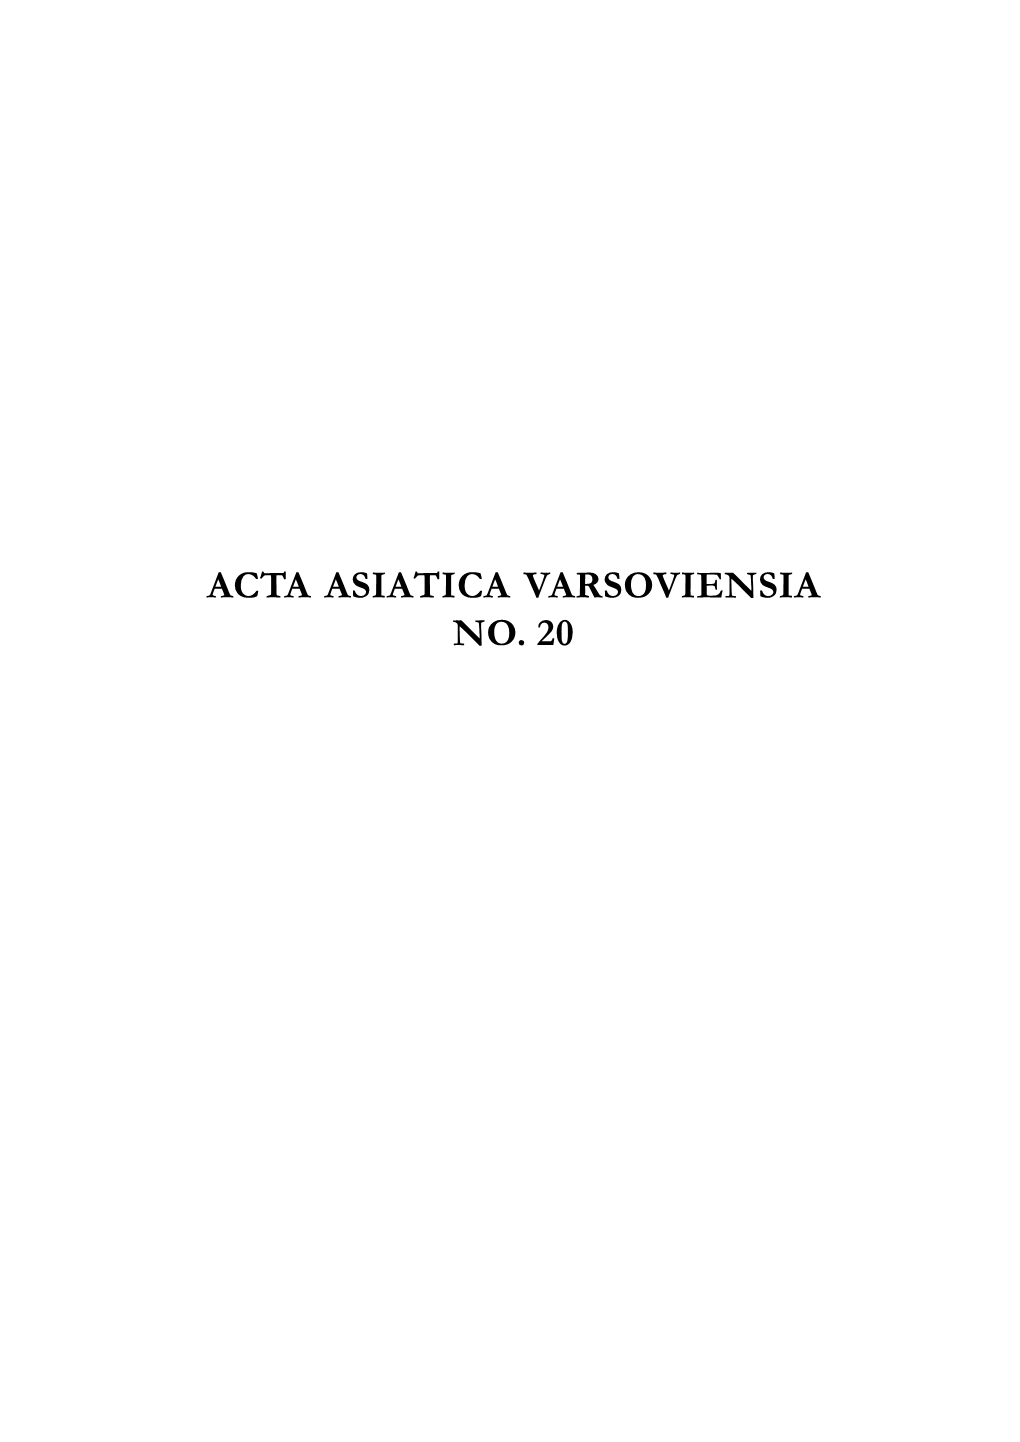 Acta Asiatica Varsoviensia No. 20 Acta Asiatica Varsoviensia